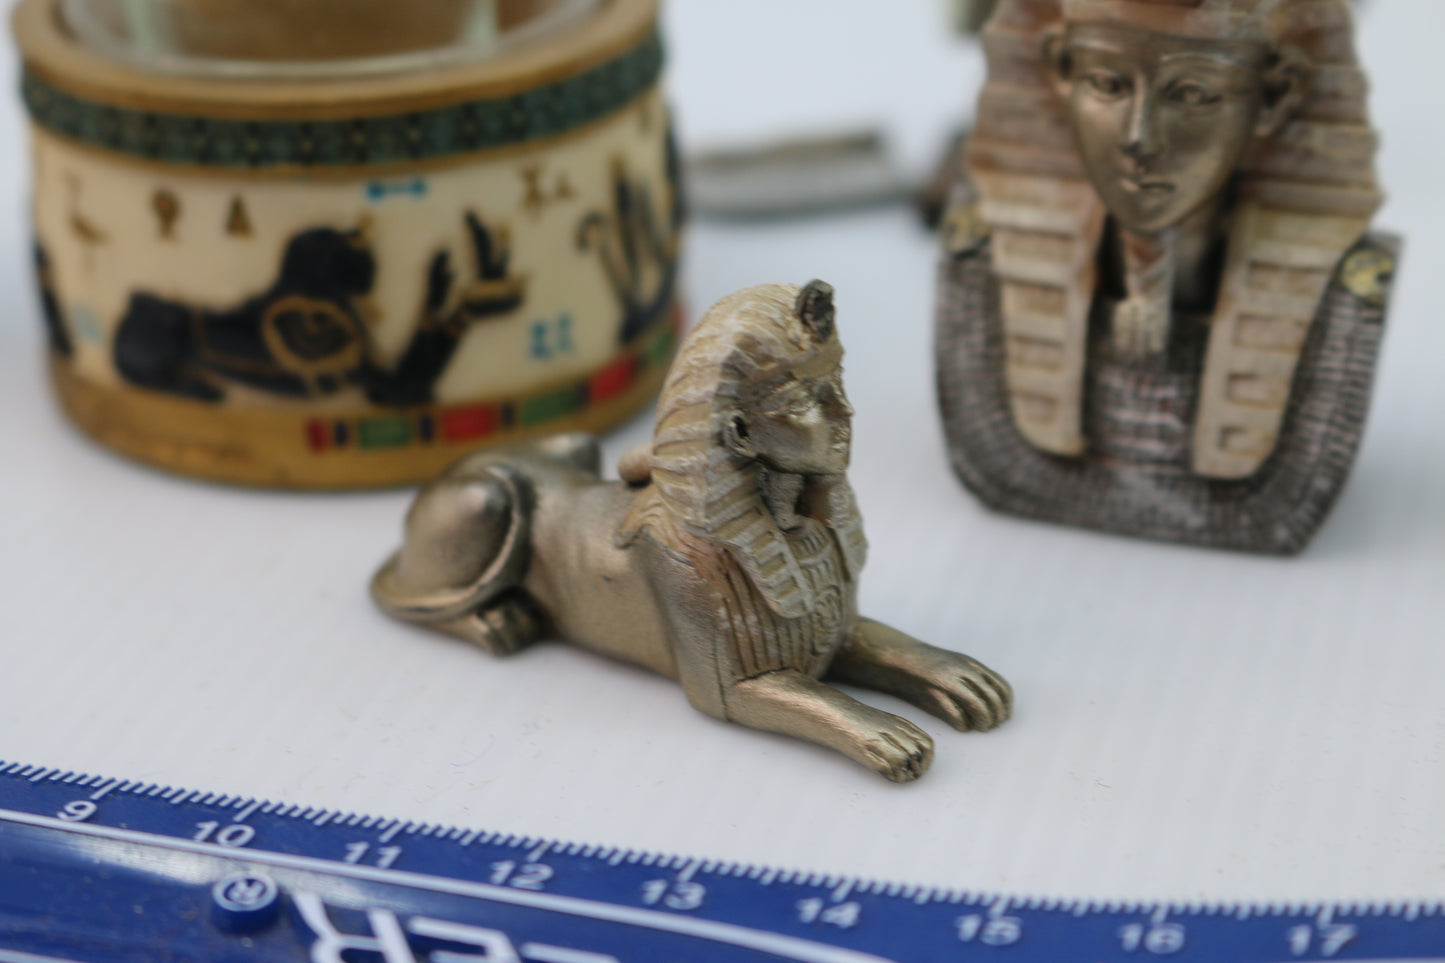 Egyptian Mythology Set of 9 Miniature Tut Horus Anubis Bastet Pharaoh Figurine